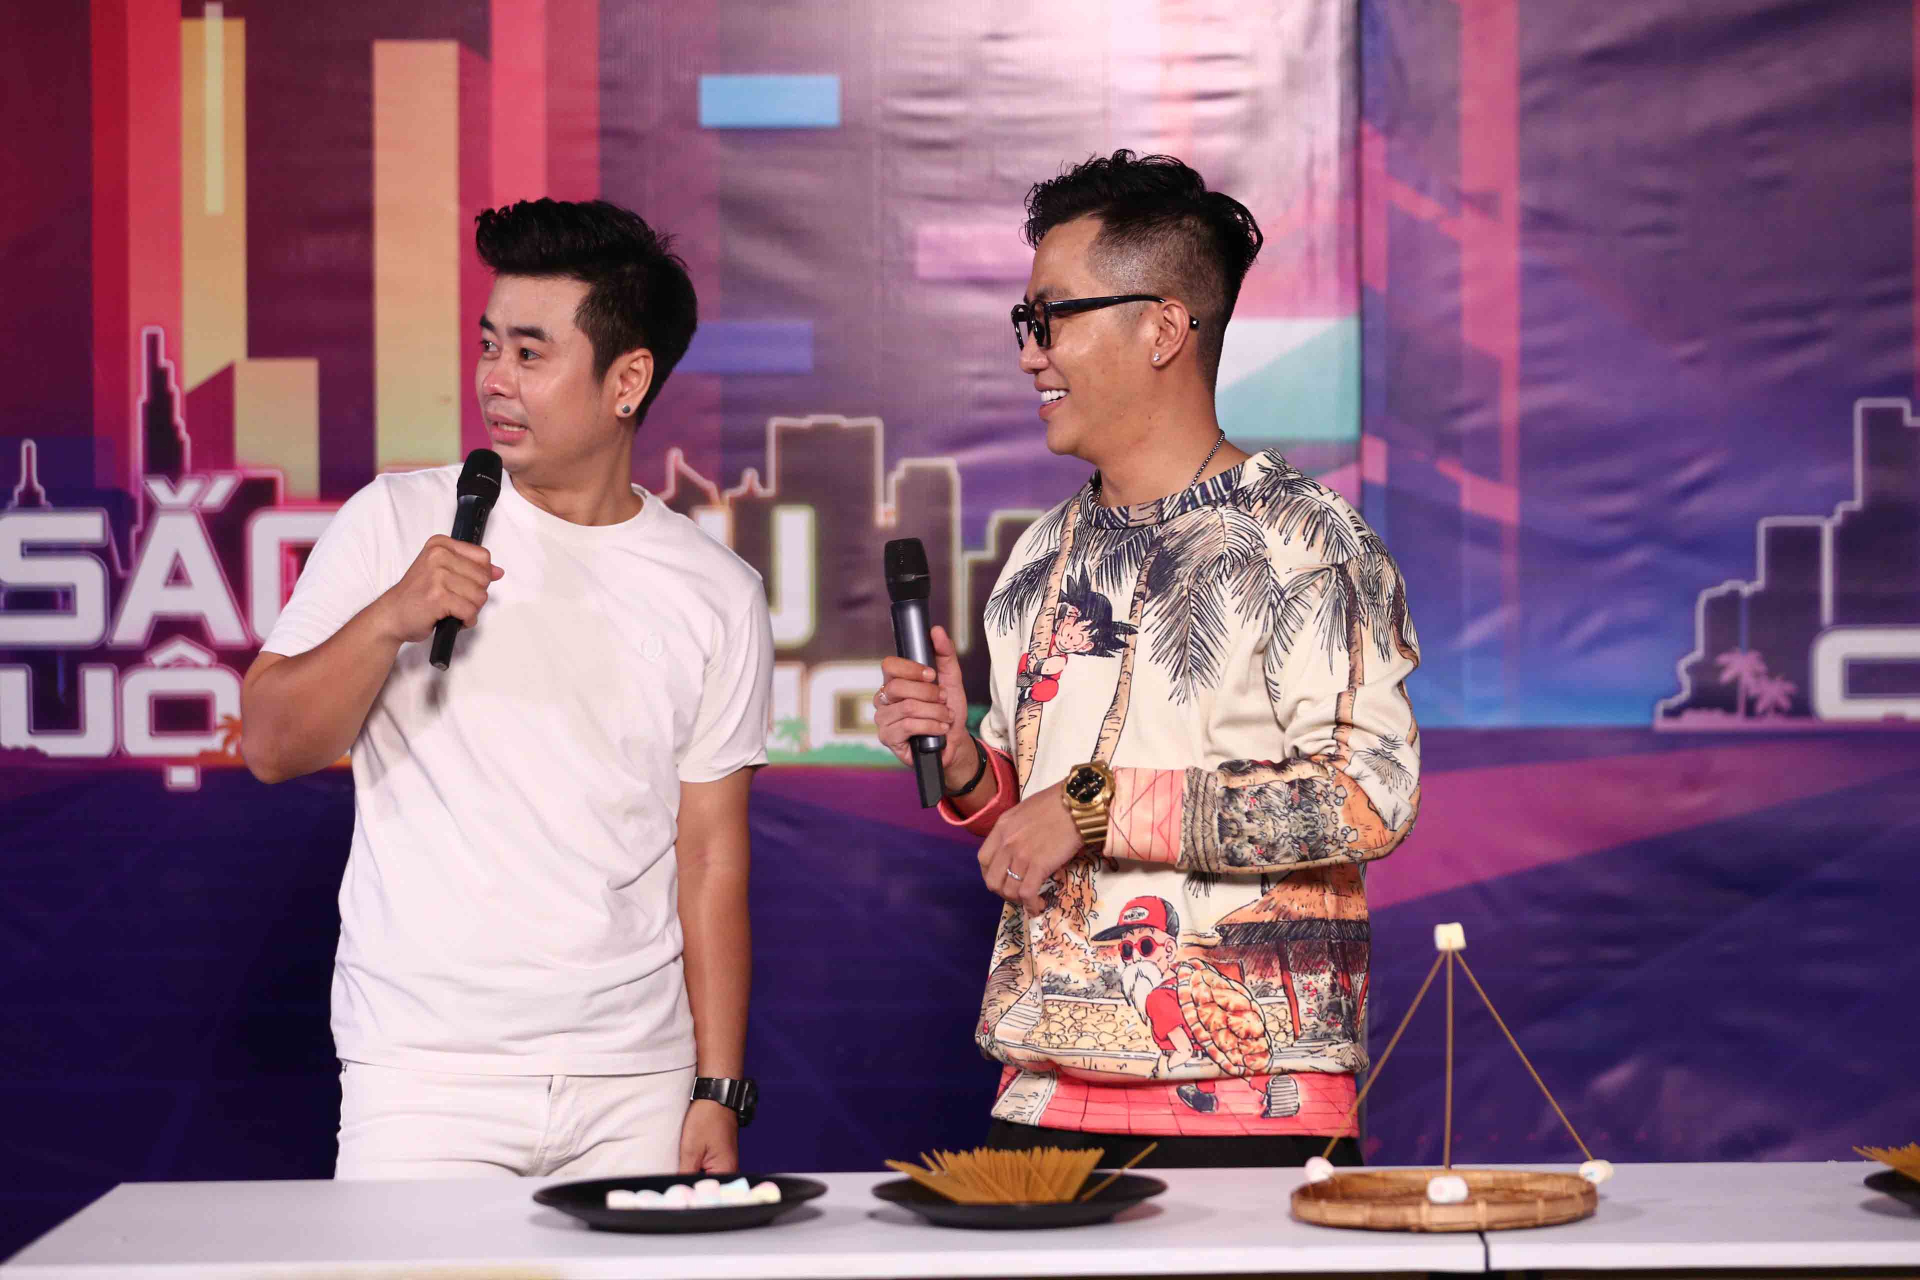 MC Hoàng Rapper cùng diễn viên Lâm Thắng tại chương trình Sắc Màu Cuộc Sống